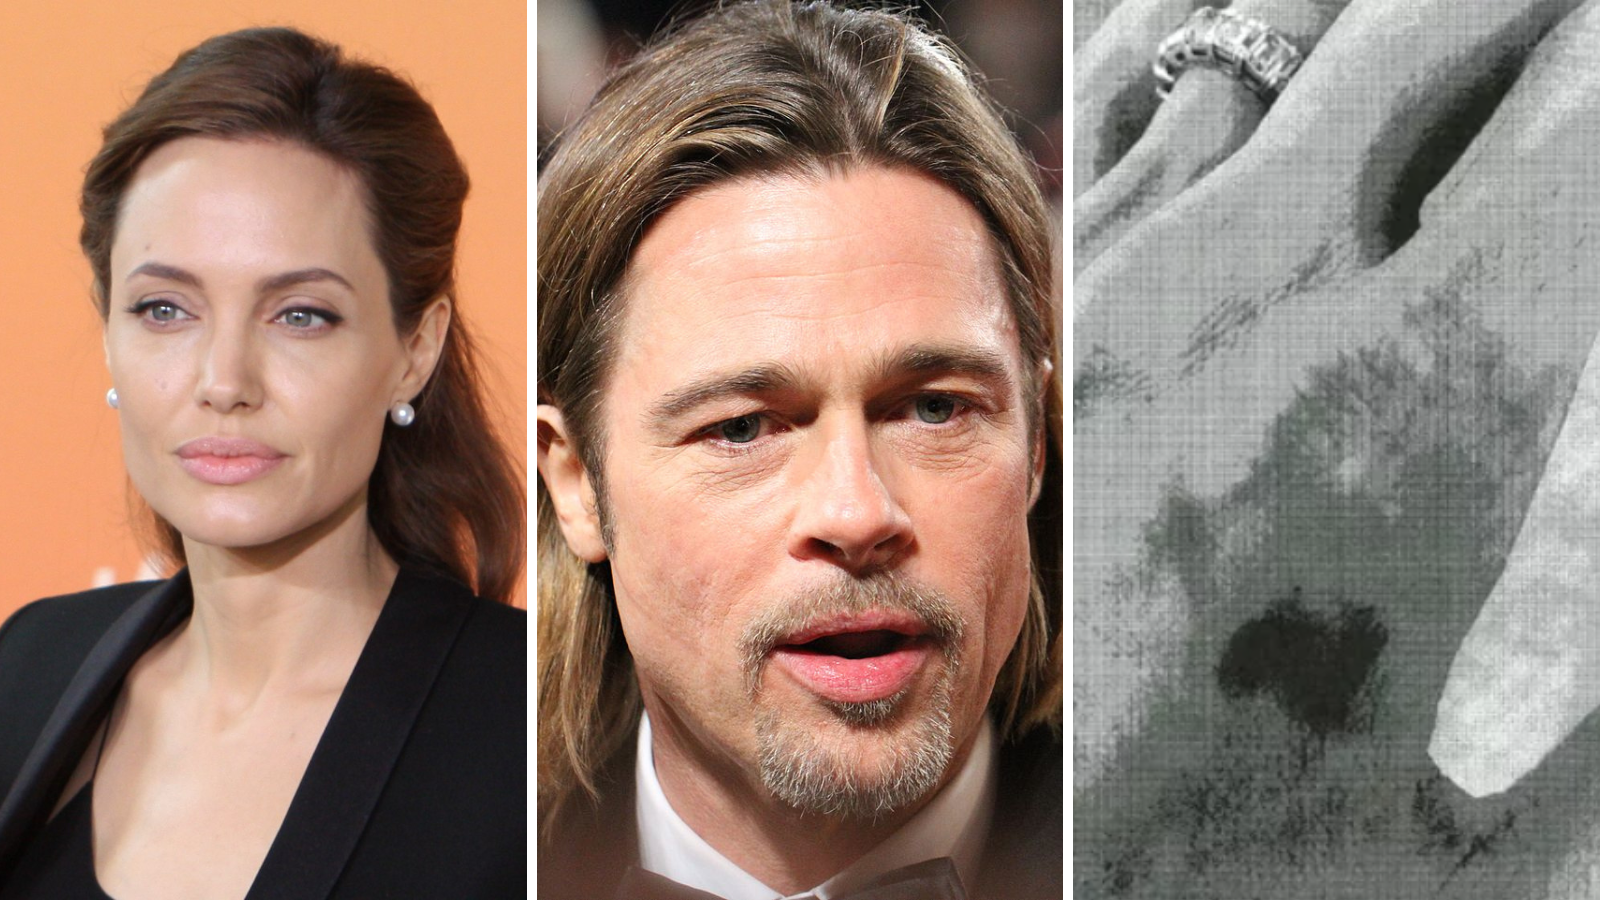 Documentos do FBI mostram ferimentos em Angelina Jolie após briga com Brad Pitt, diz site